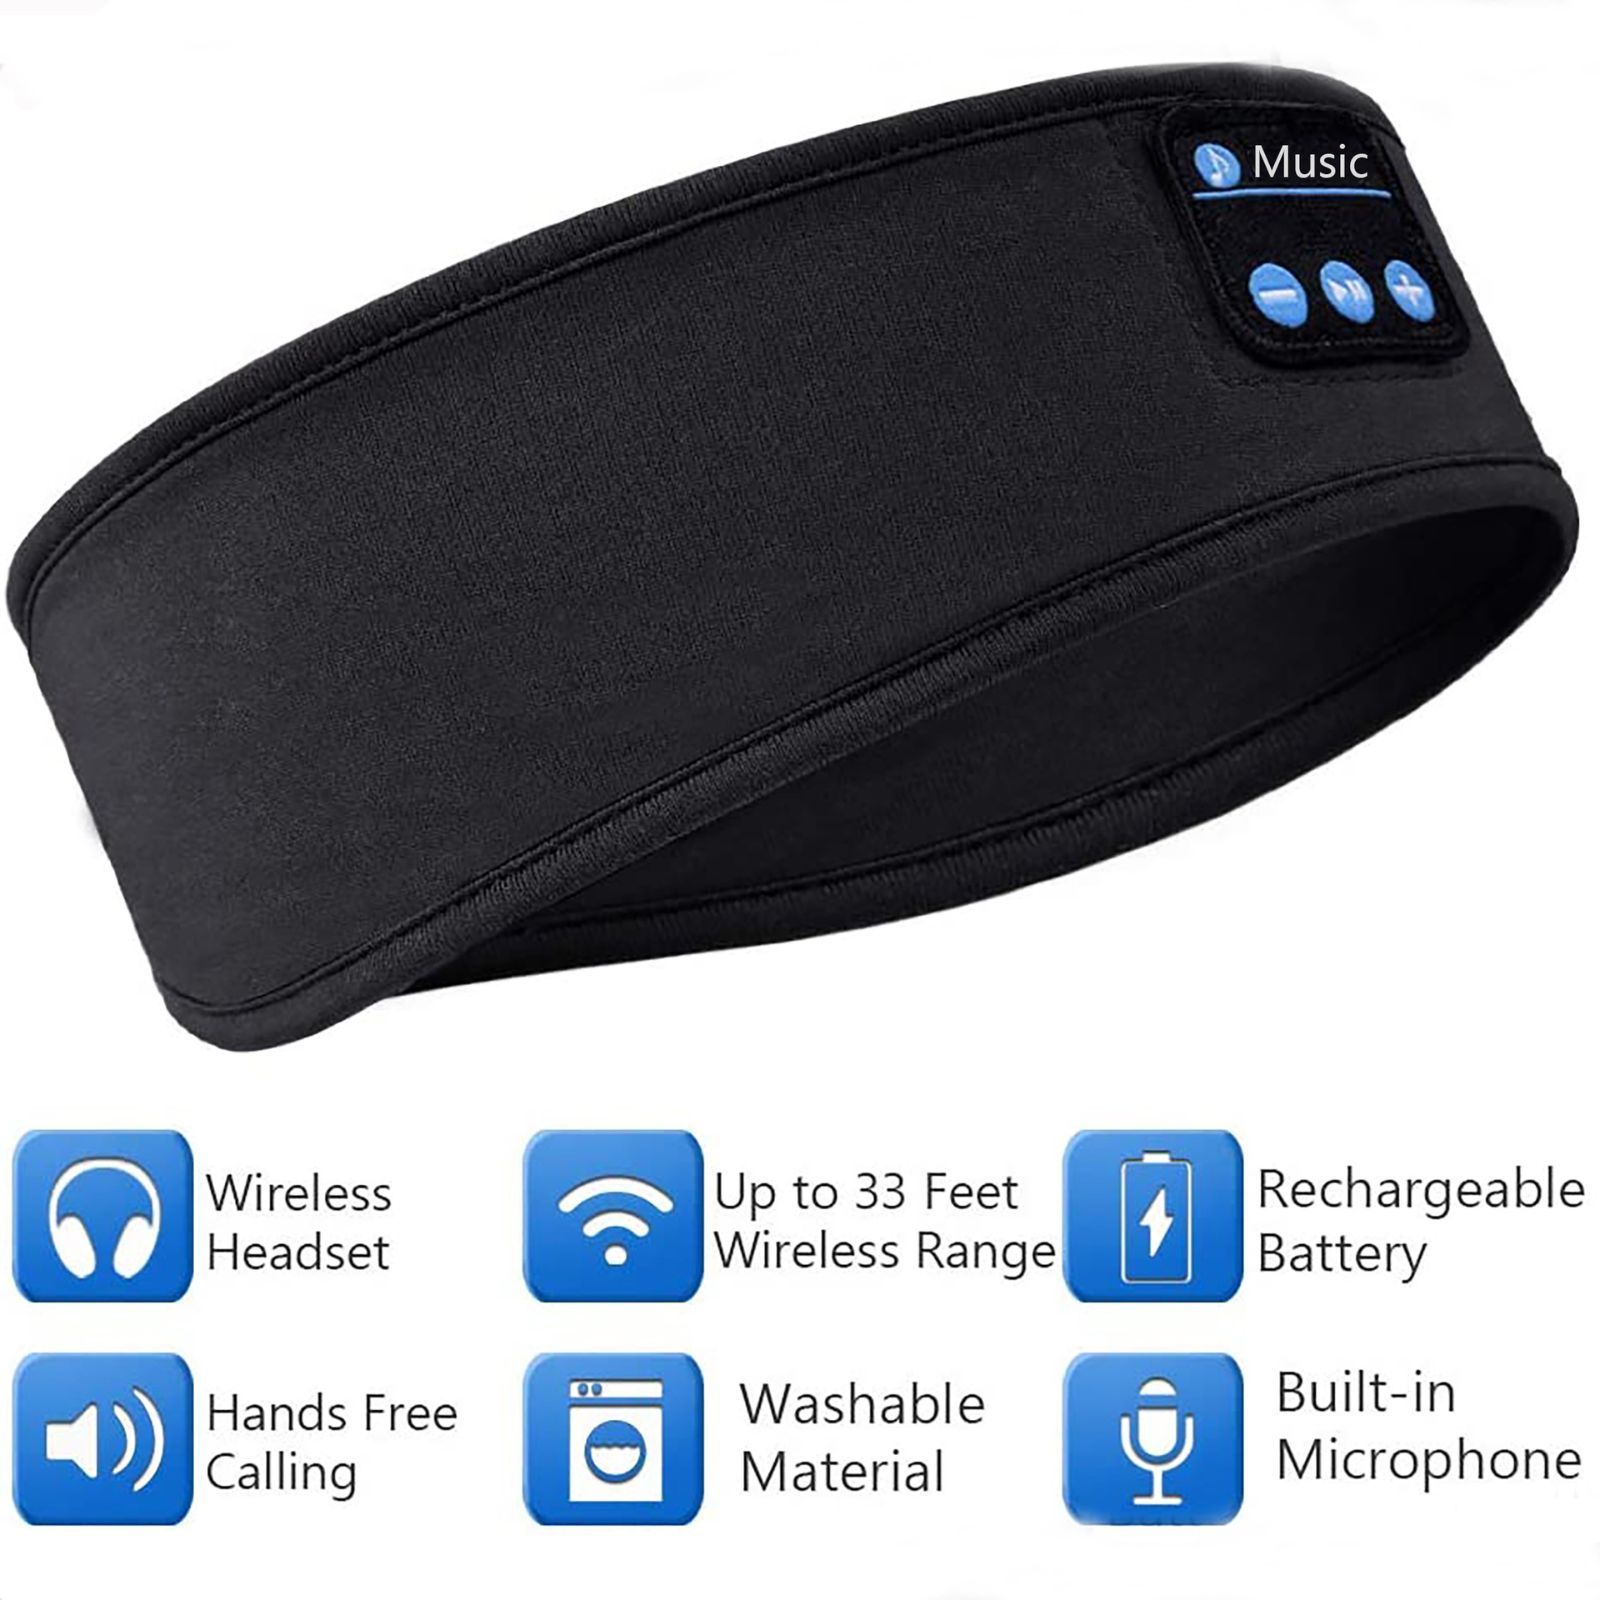 スポーツヘッドバンド Bluetooth 5.0 アウトドア ランニング ヨガ 吸汗